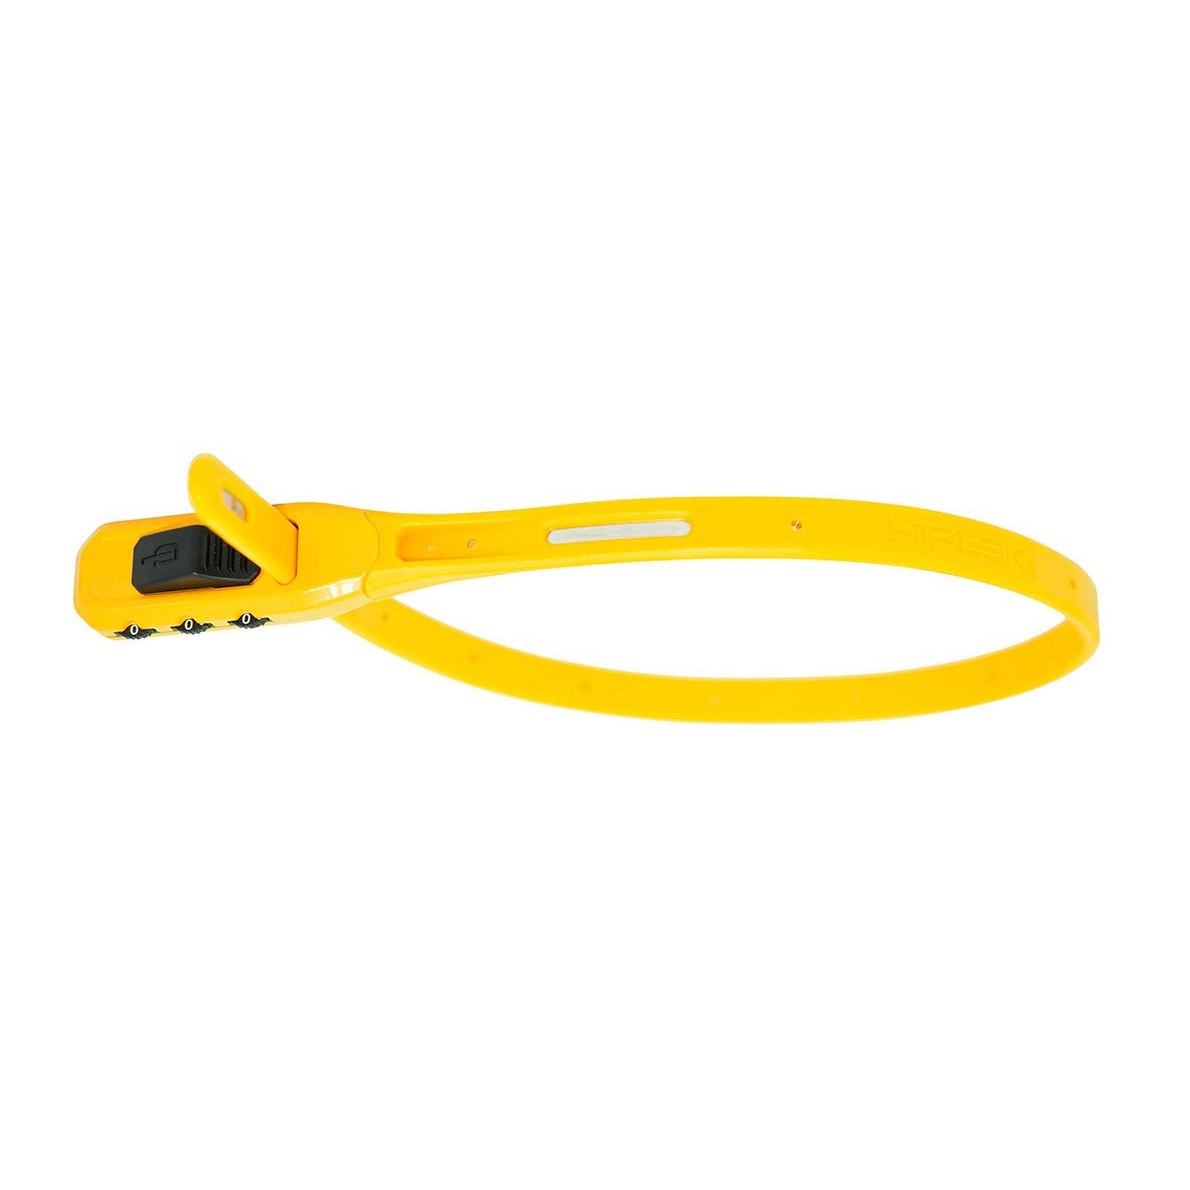 Productfoto van Hiplok Z-Lok Combo Armored Tie Lock with Combination Lock - yellow